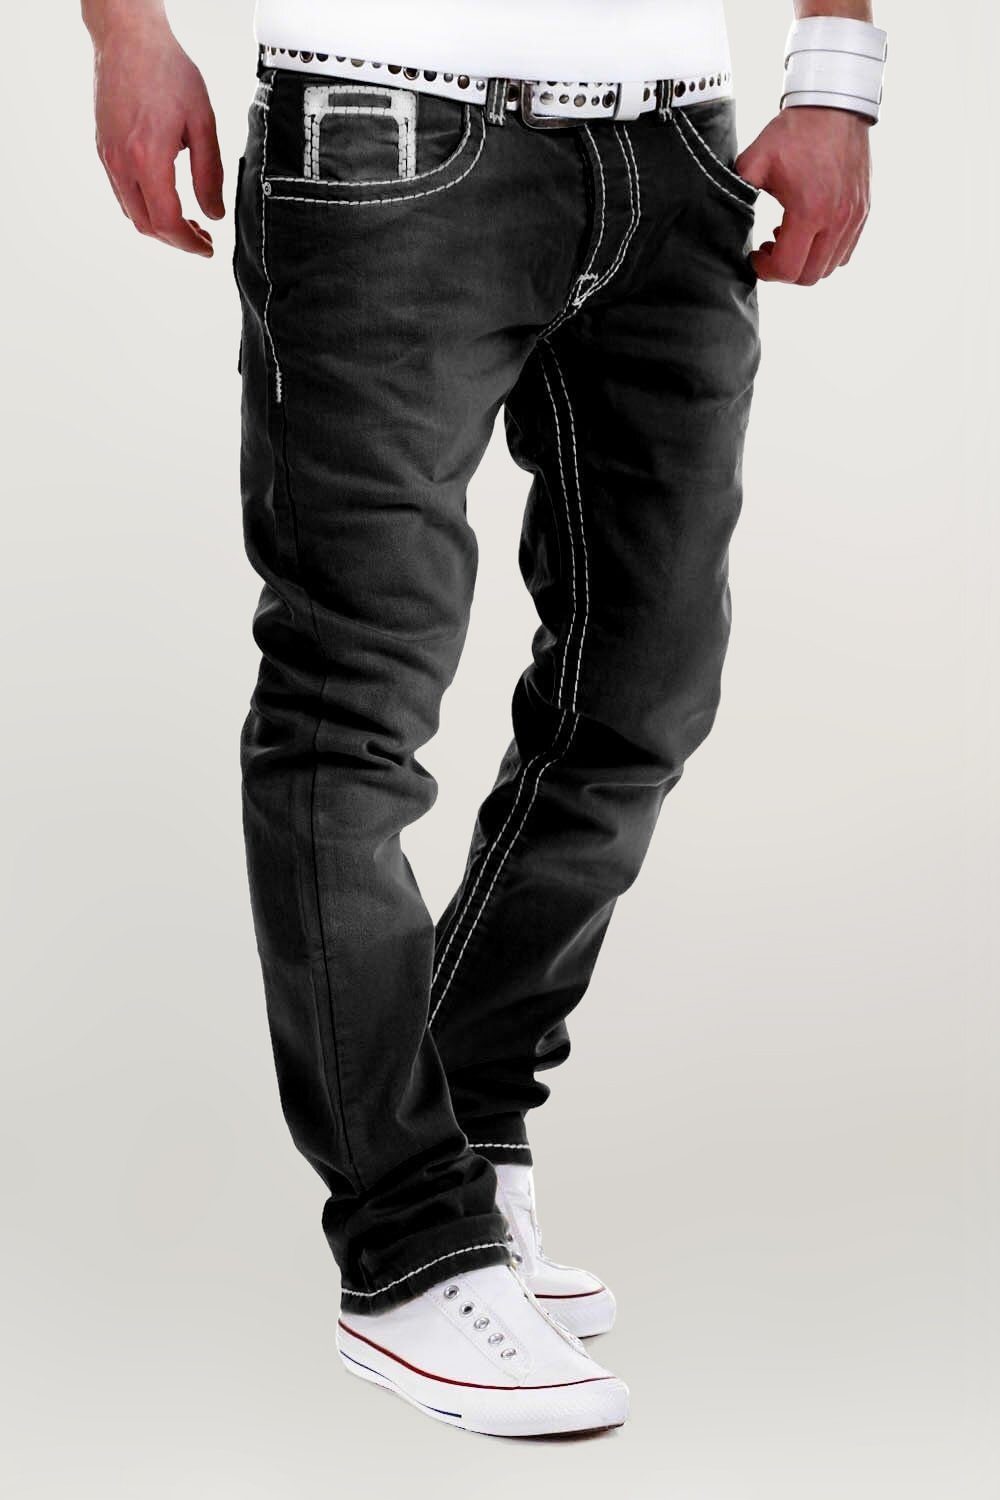 dicken behype mit Kontrastnähten Jeans Stitch schwarz Bequeme